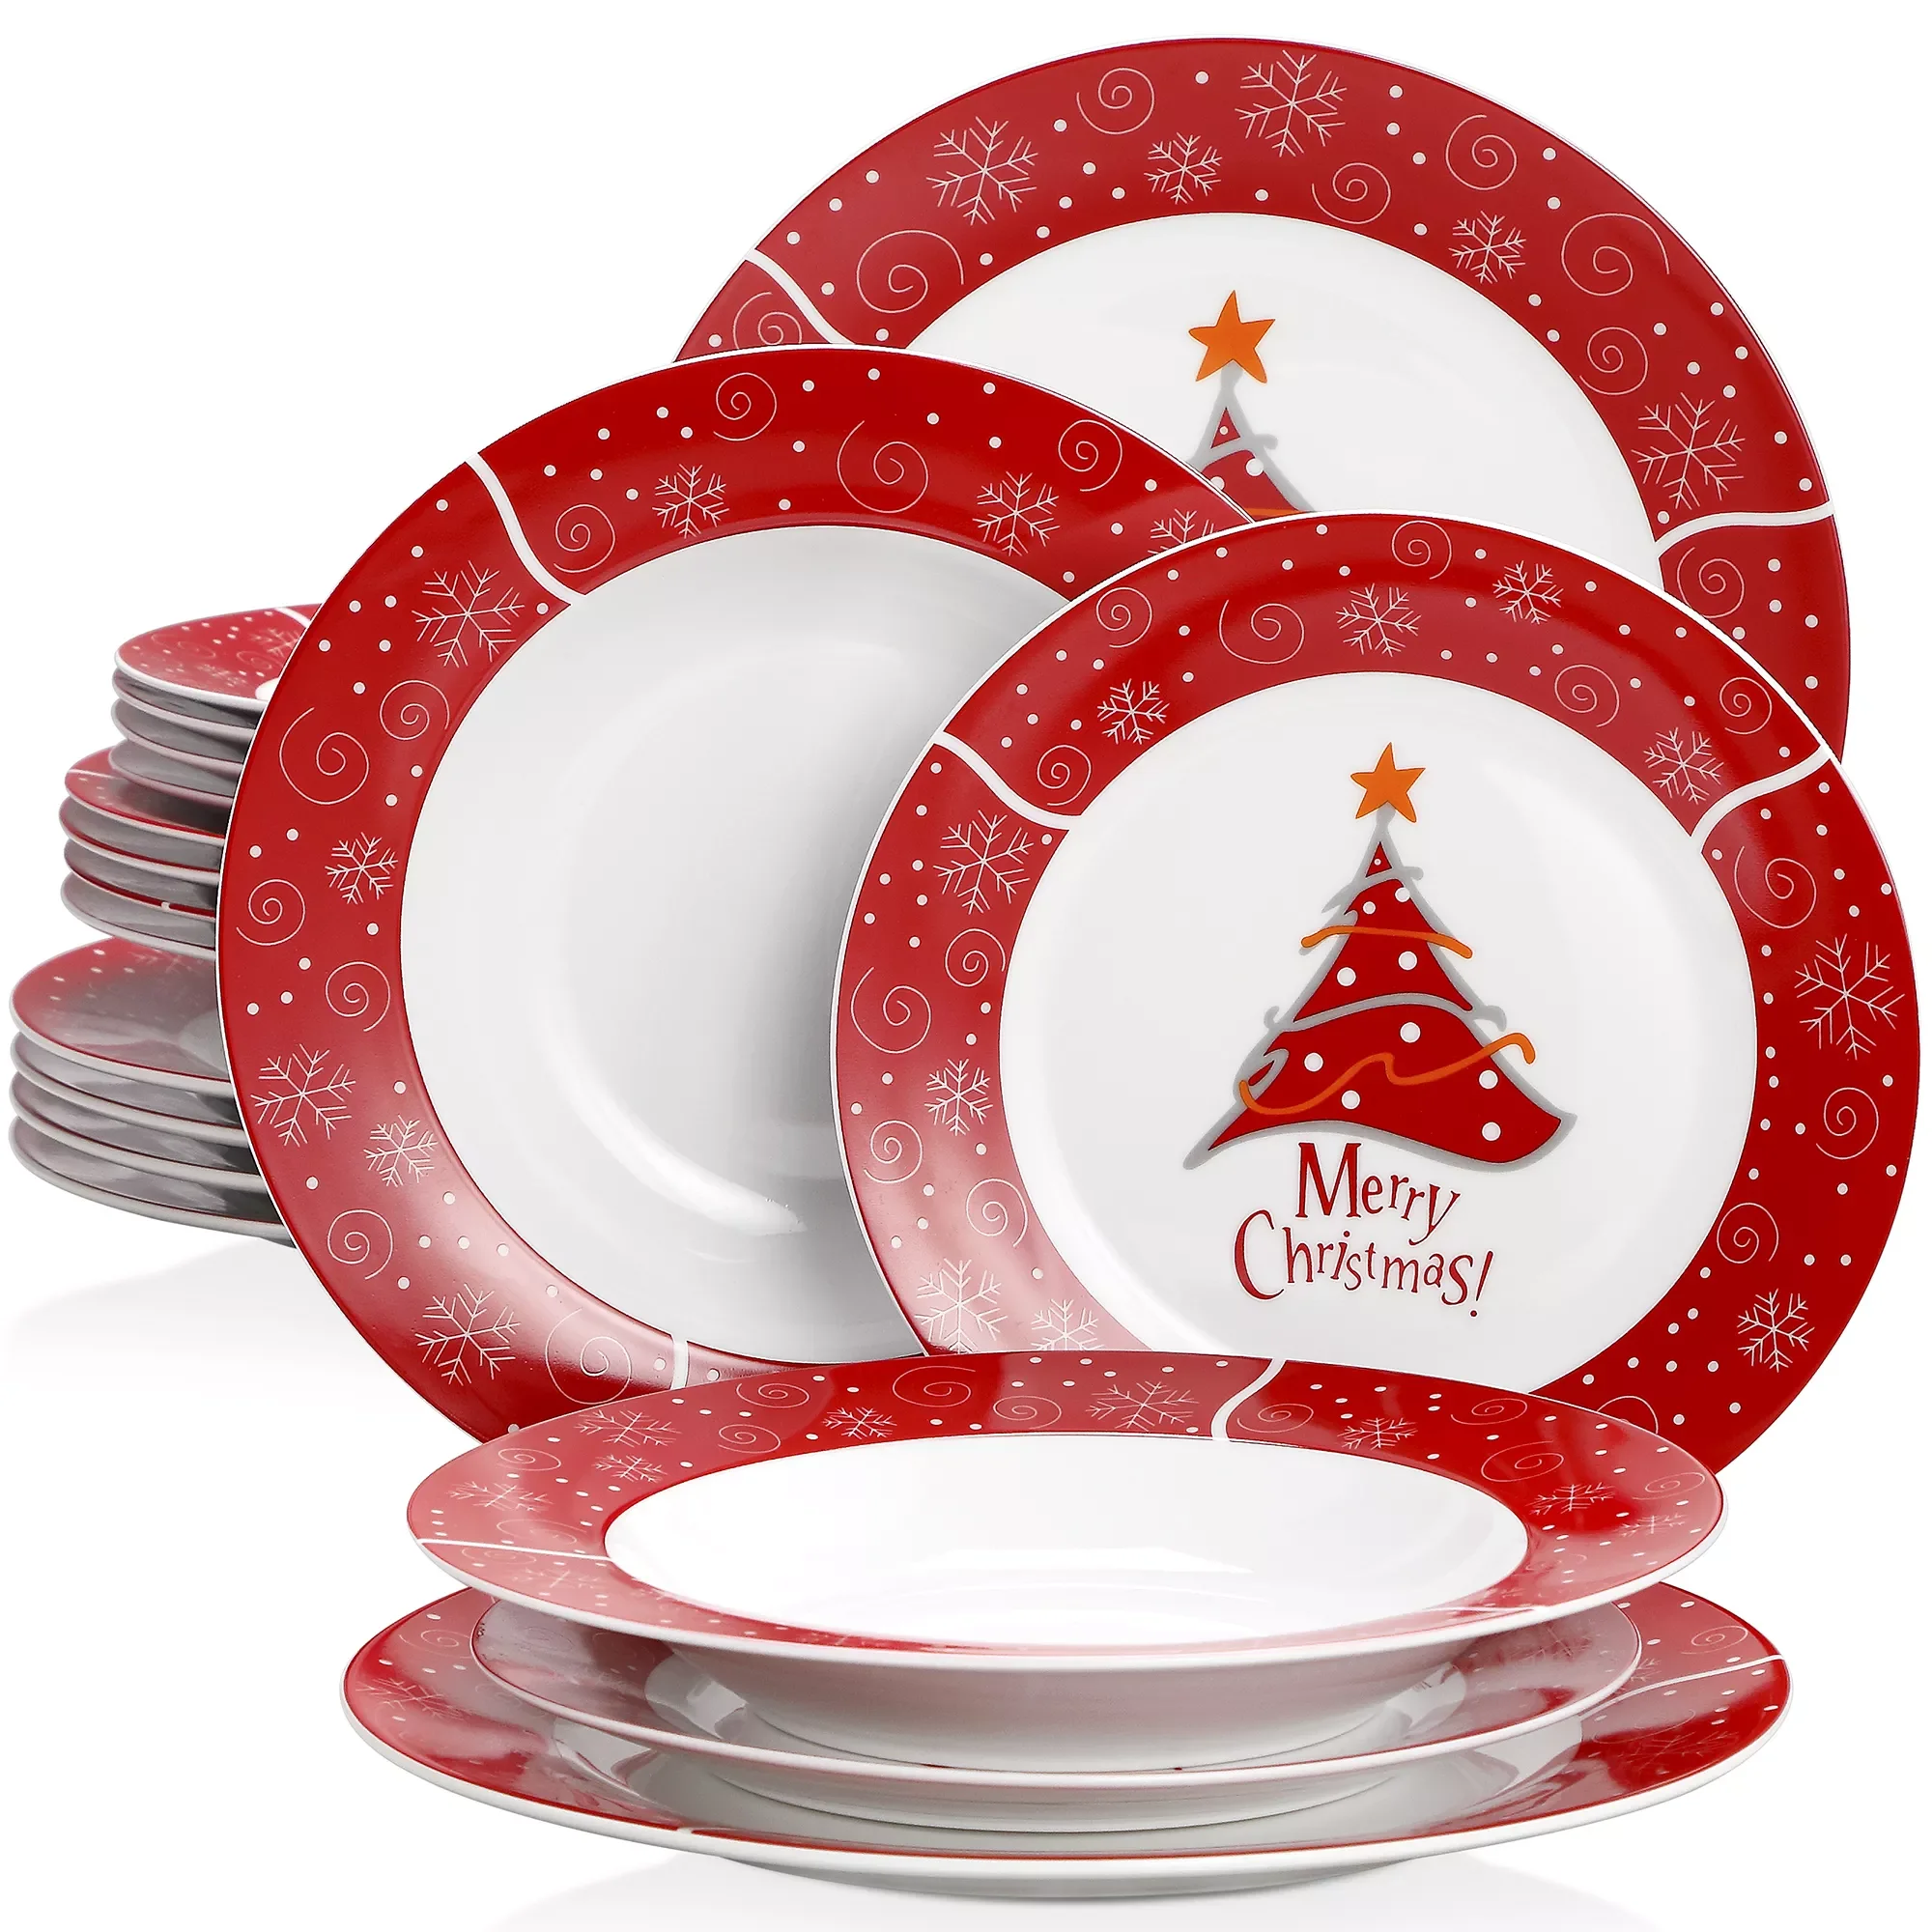 

Набор фарфоровой посуды в рождественском стиле из 18 предметов с 6 тарелками для десертов, тарелками для супа и подарочными тарелками